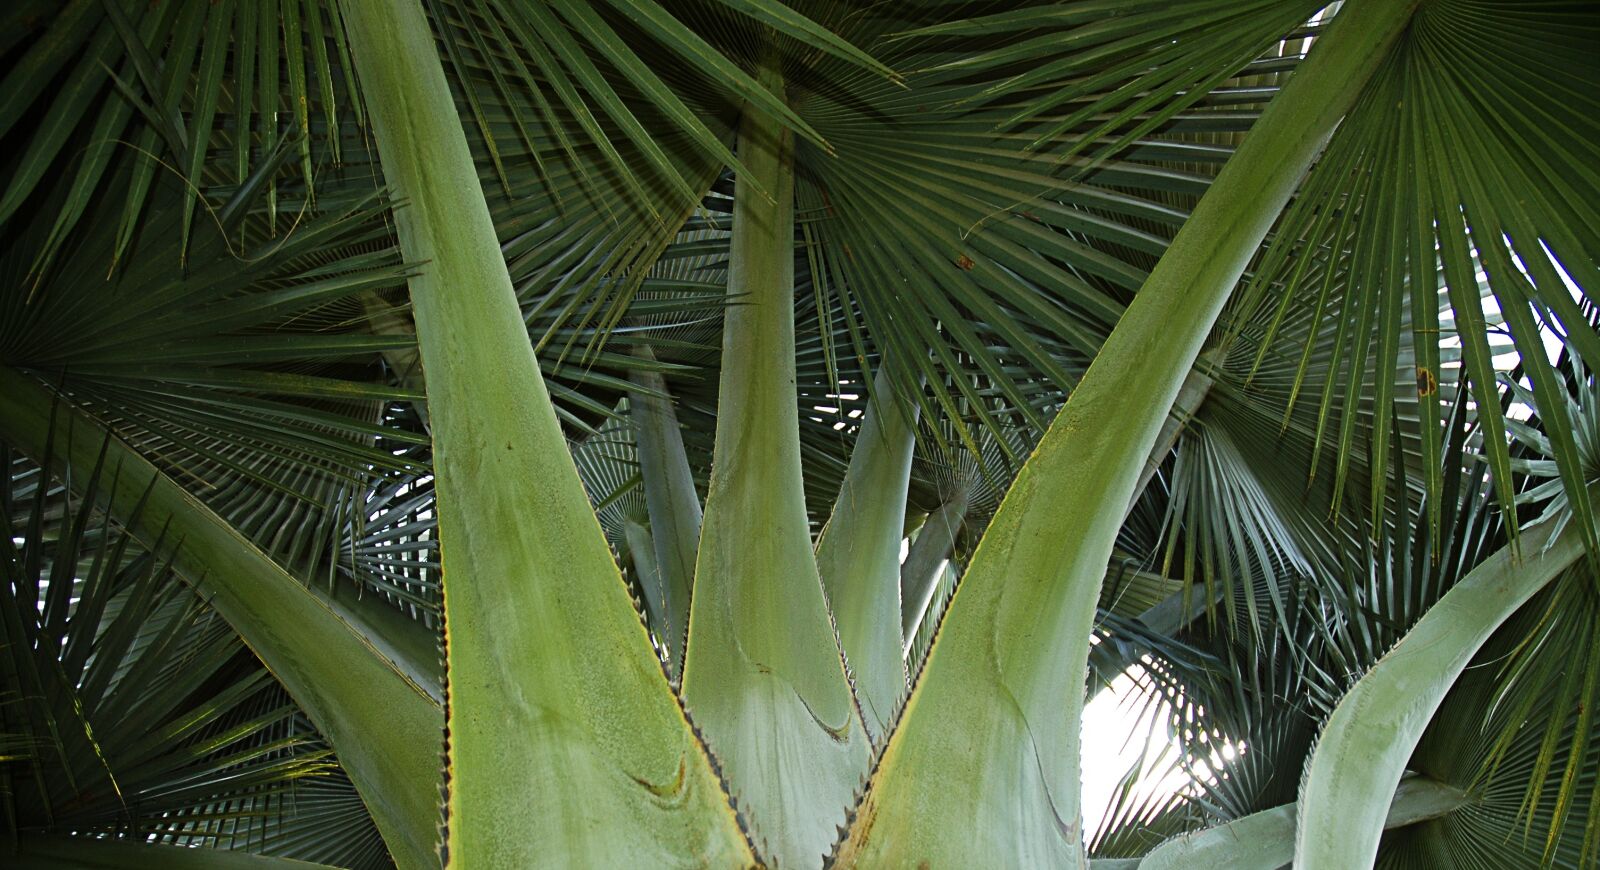 Nikon D70 sample photo. Palm, fan palm, green photography